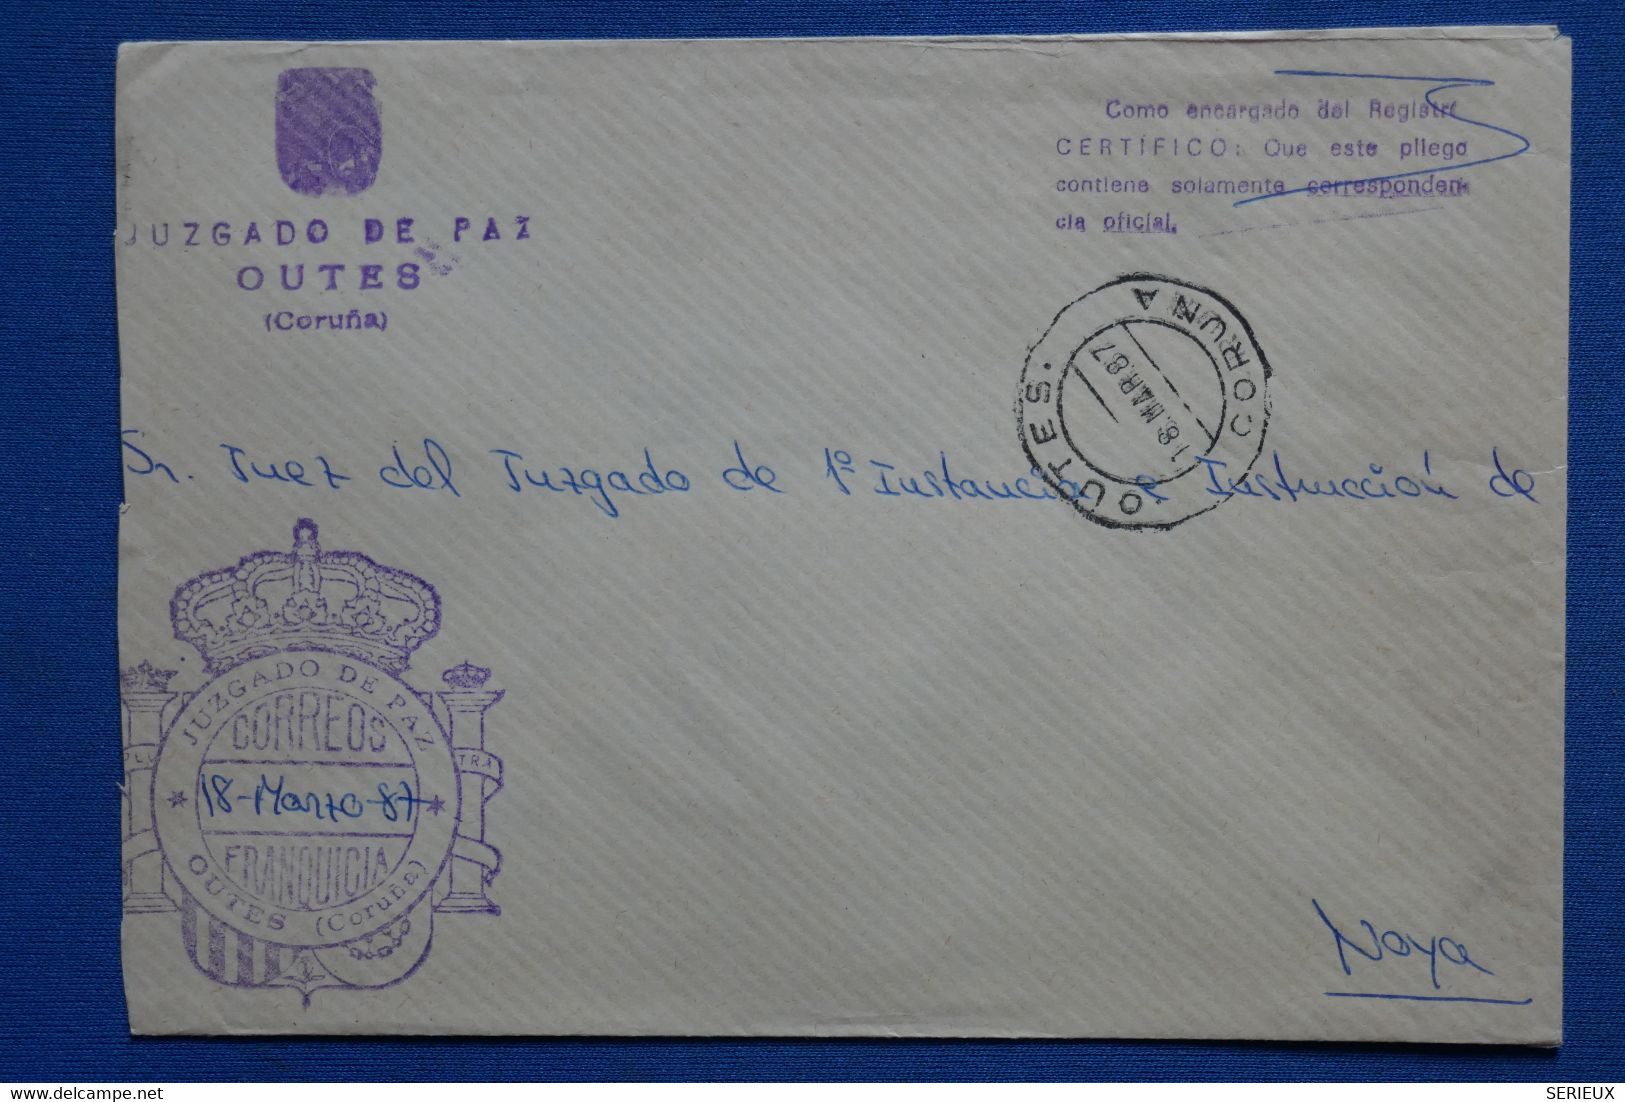 AC9 ESPANA  BELLE LETTRE   1987  JUZGADO DE PAZ  OUTES + + AFFRANCHISSEMENT INTERESSANT - Covers & Documents